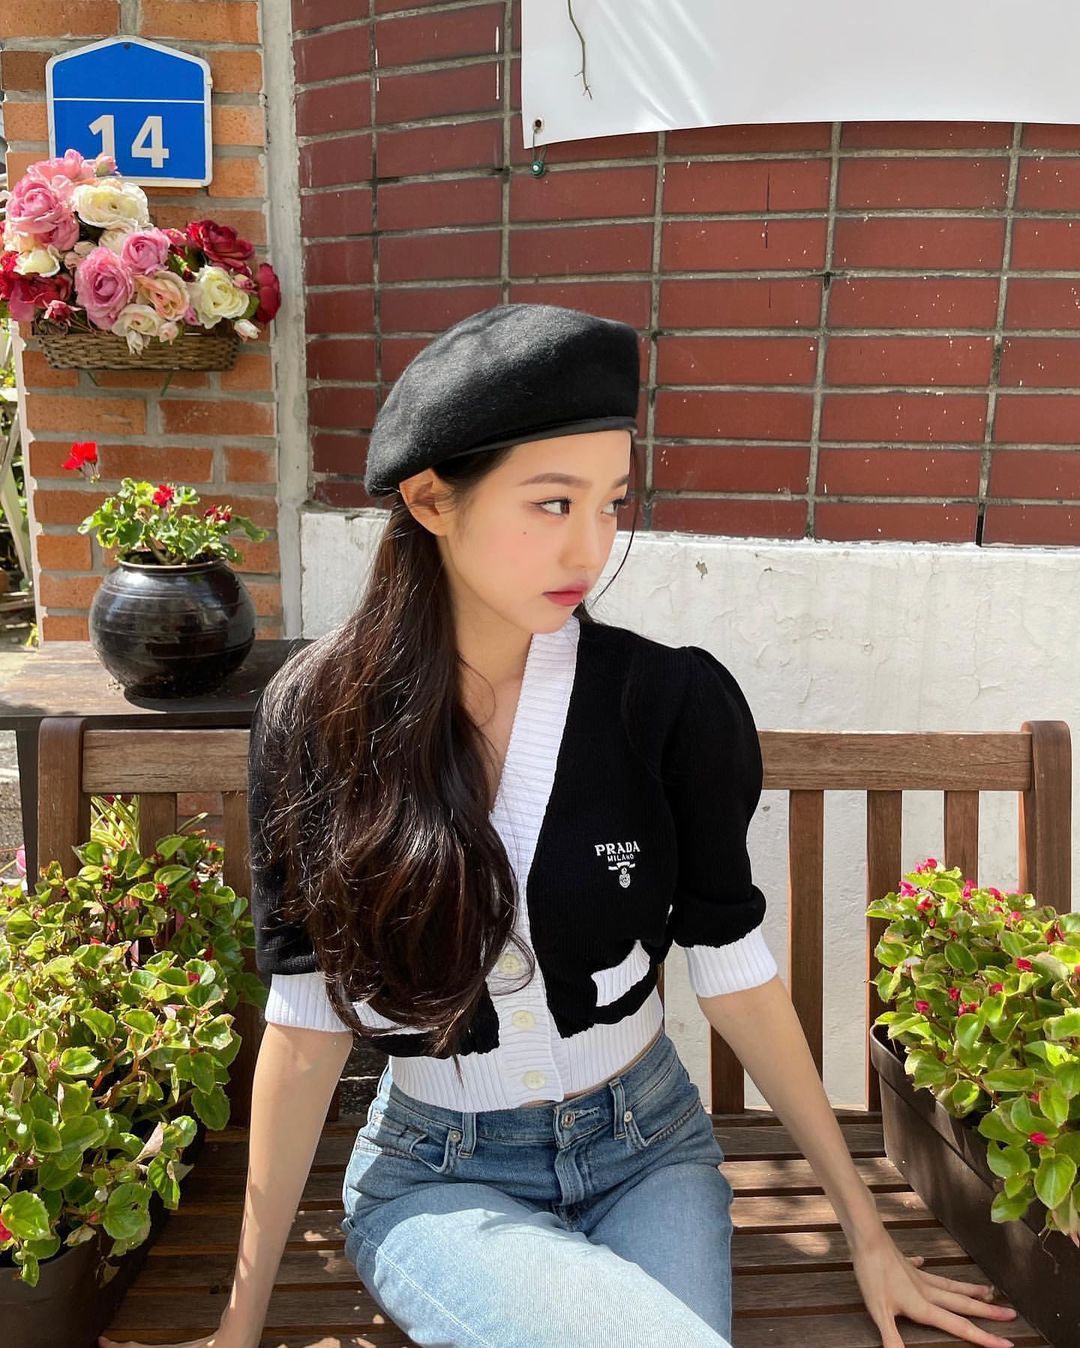 Ellegirljapan 韓国セレブのベレー帽ファッション この冬 クラシカルなベレー帽が流行中いつものコーデに投入するだけで ぐっと上品な印象にヘアスタイルや洋服との組み合わせはおし Wacoca Japan People Life Style